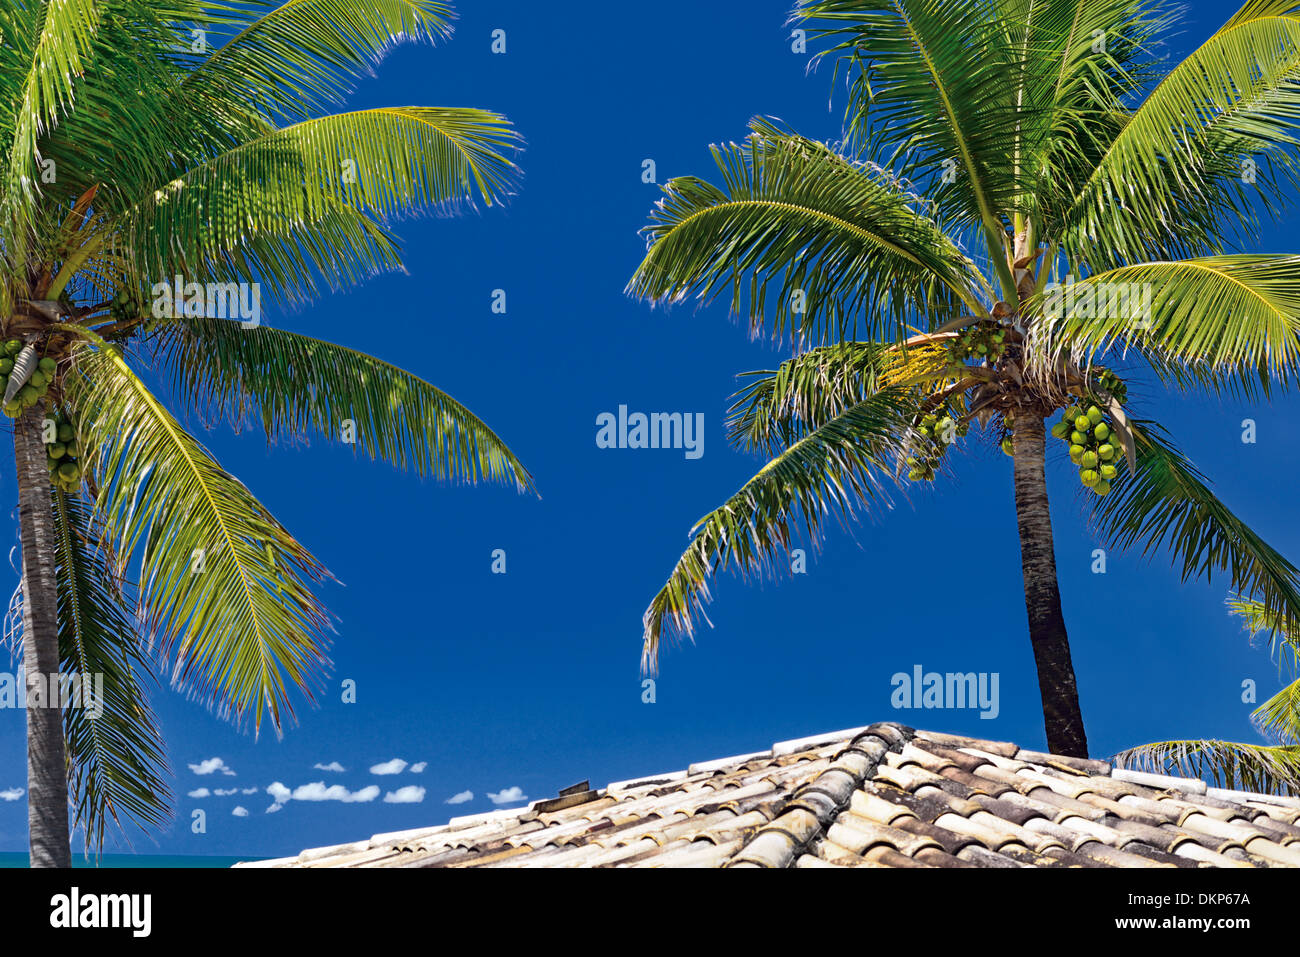 Brasilien, Bahia: Kokosnuss-Palmen und Hütte Dach am ehemaligen Hippie-Strand Arembepe Stockfoto